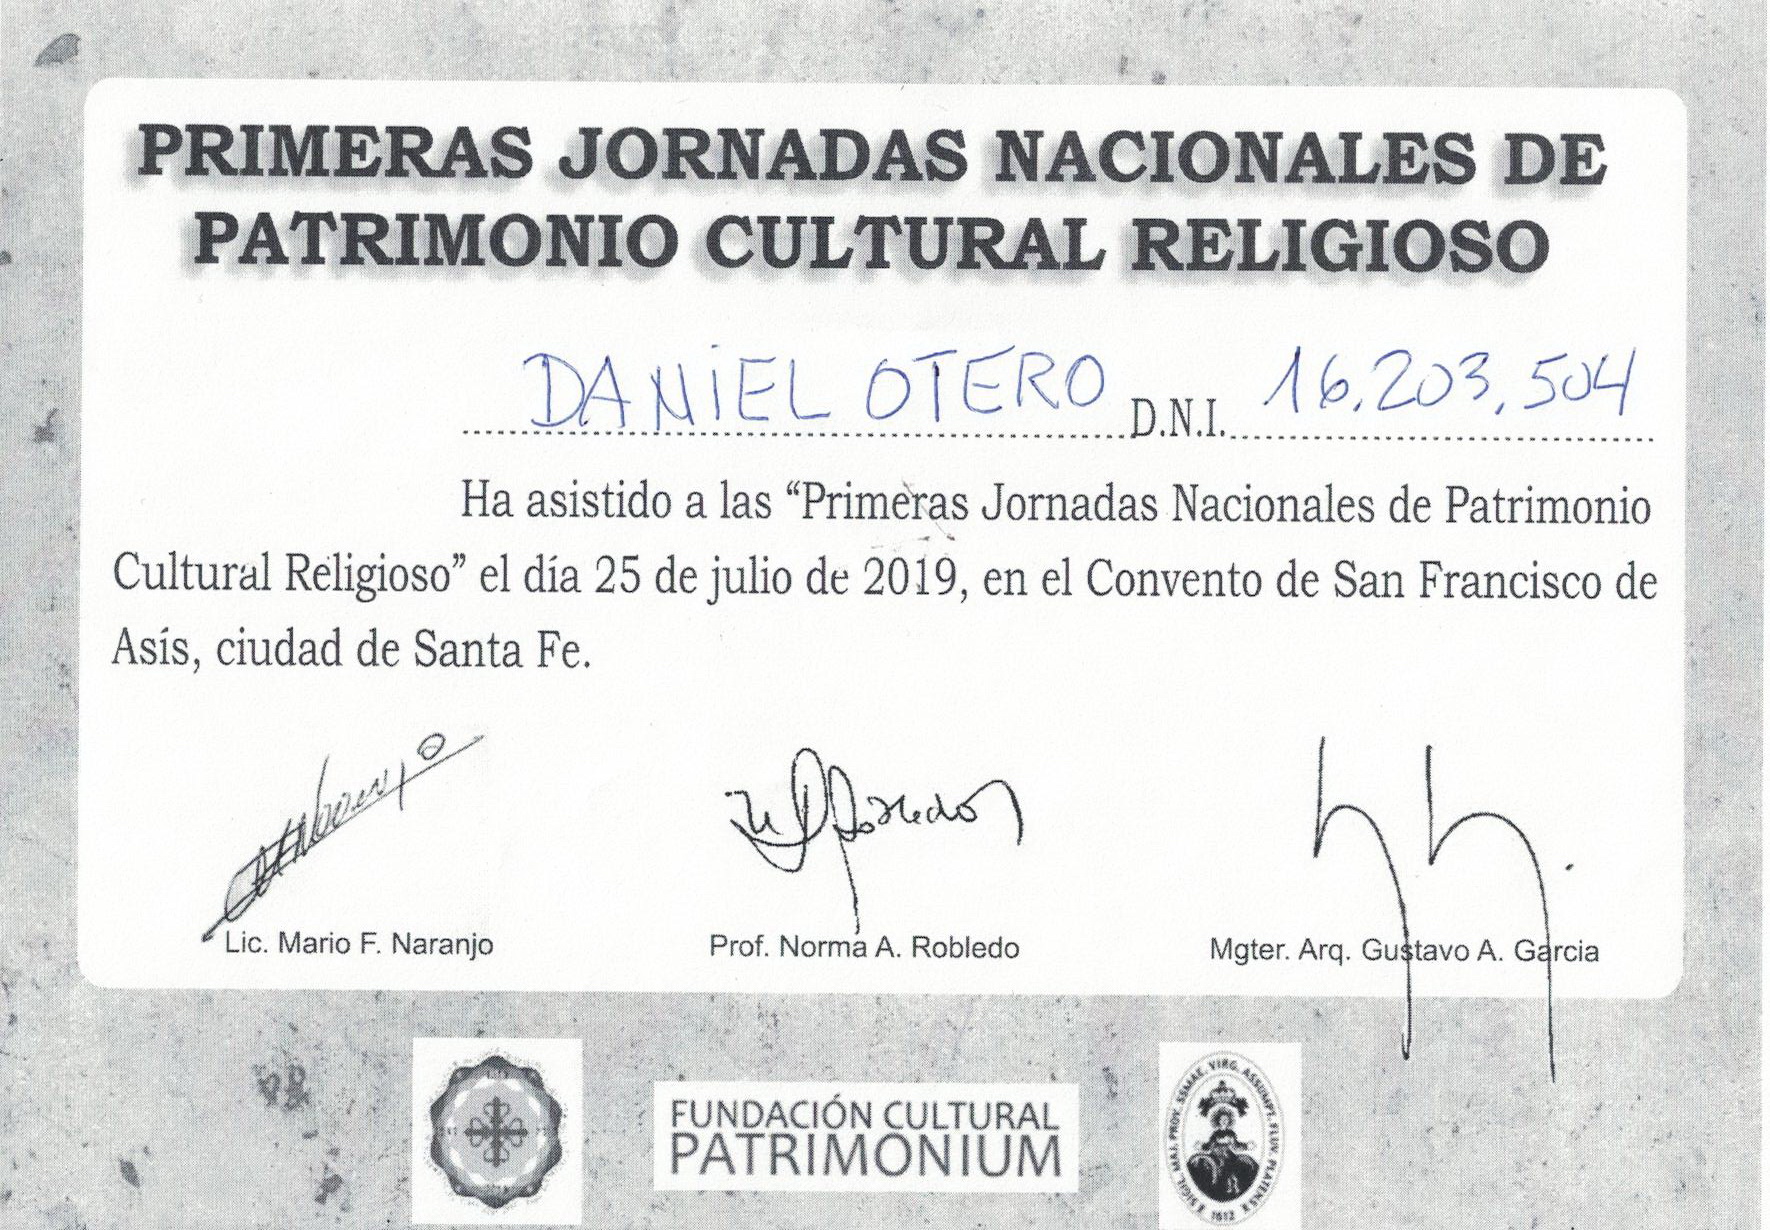 #DanielOtero#BancoVoii#PolicíaFederal#Capacitación#Patrimonio. #DanielOtero tuvo en el año 2019, dos fuertes instancias de capacitación. Una de ellas fue las jornadas nacionales de patrimonio, organizadas por la #FundacionCulturalPatrimonium.